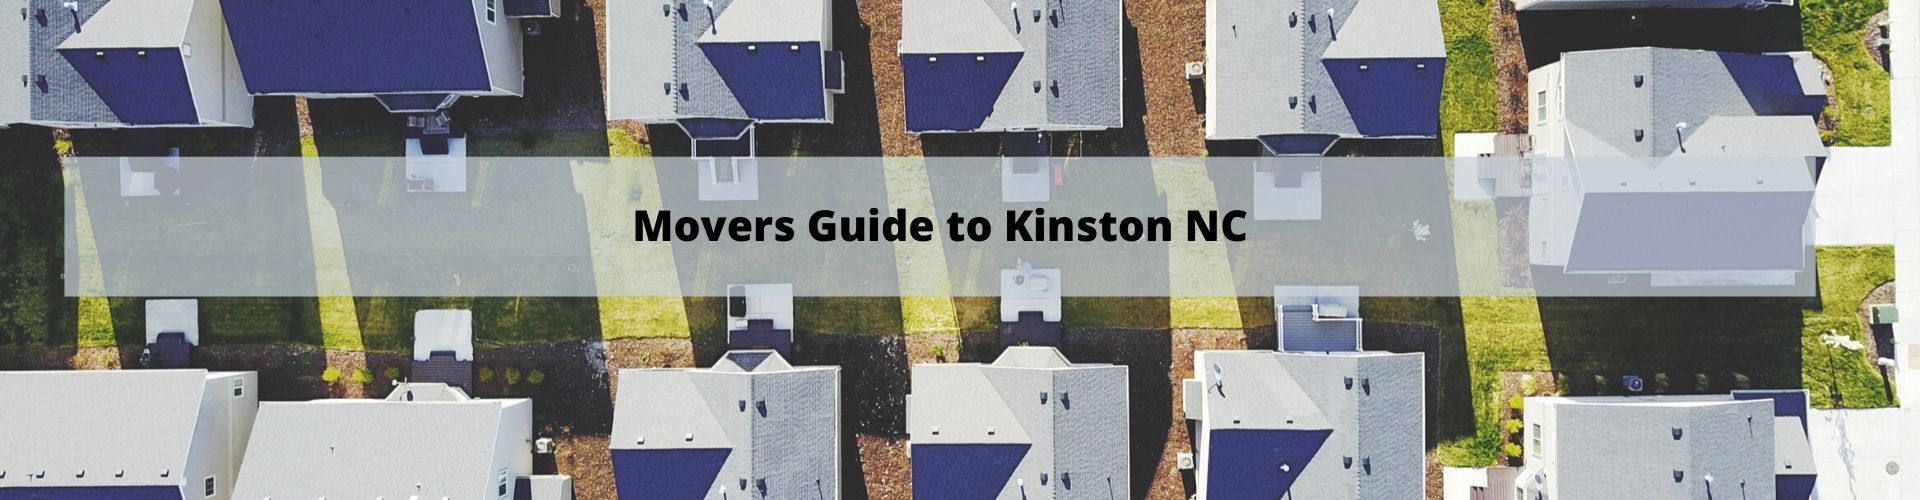 Kinston NC Movers Guide